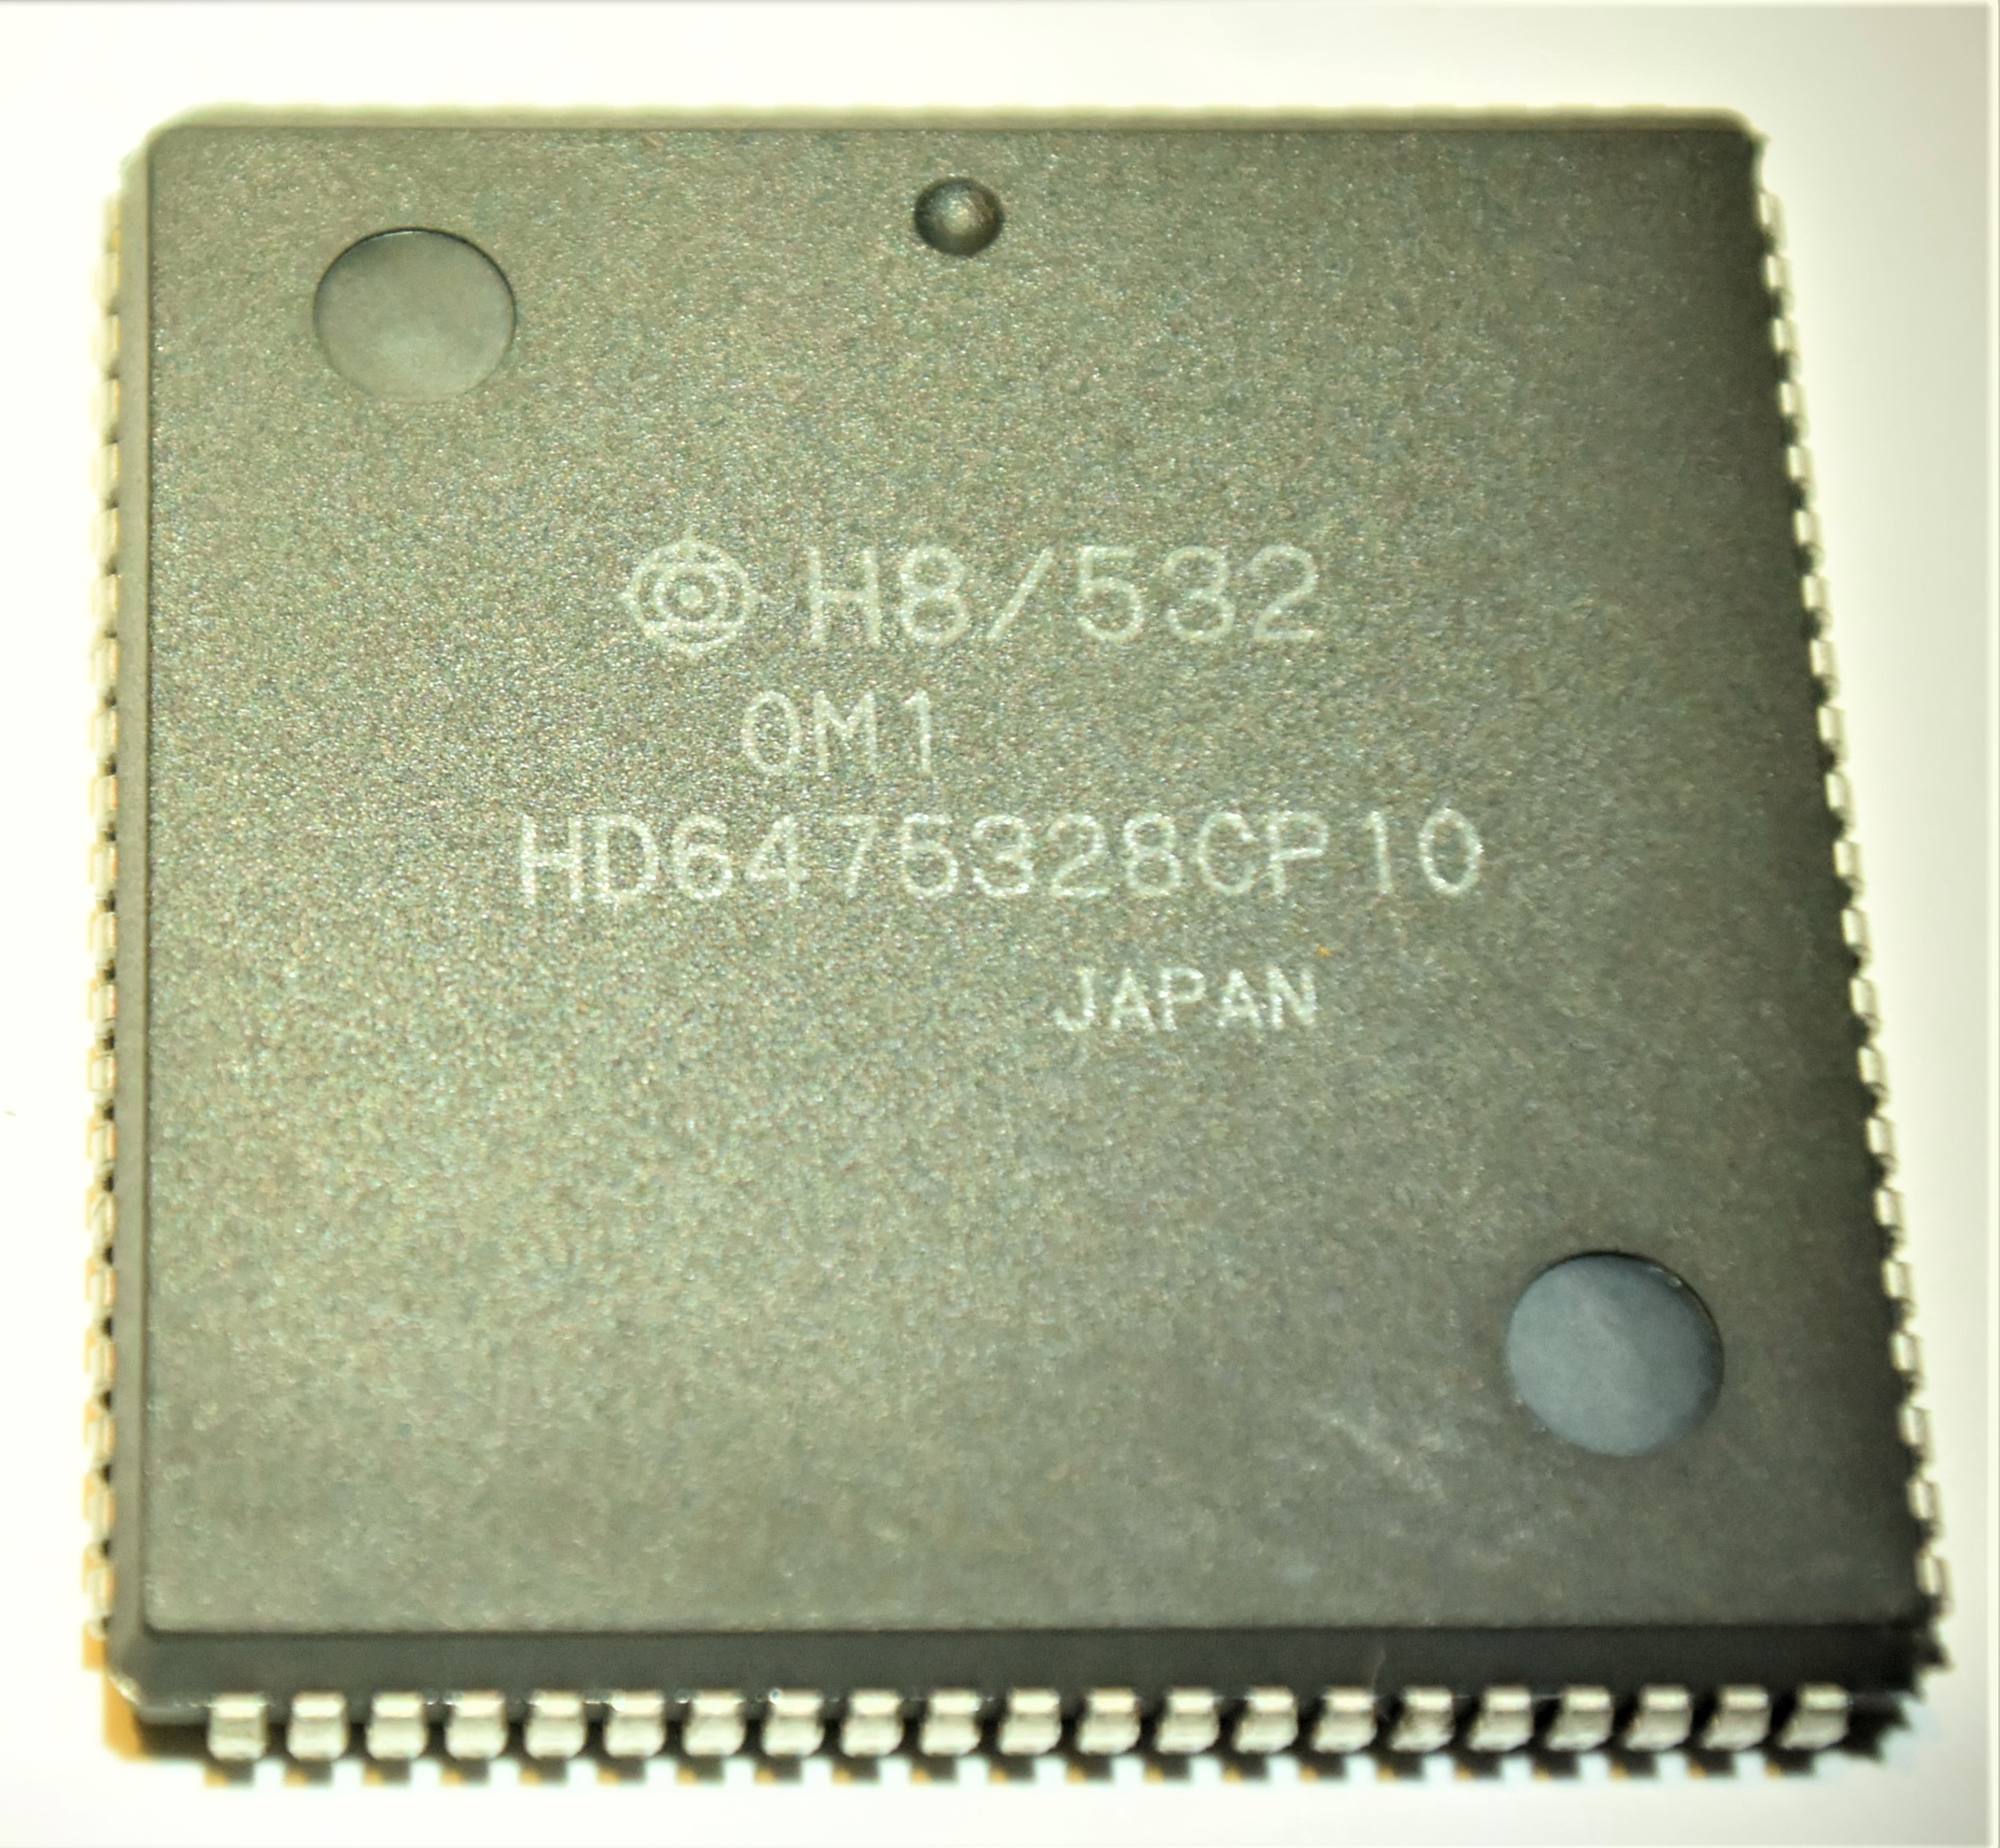 HD6475628CP-10